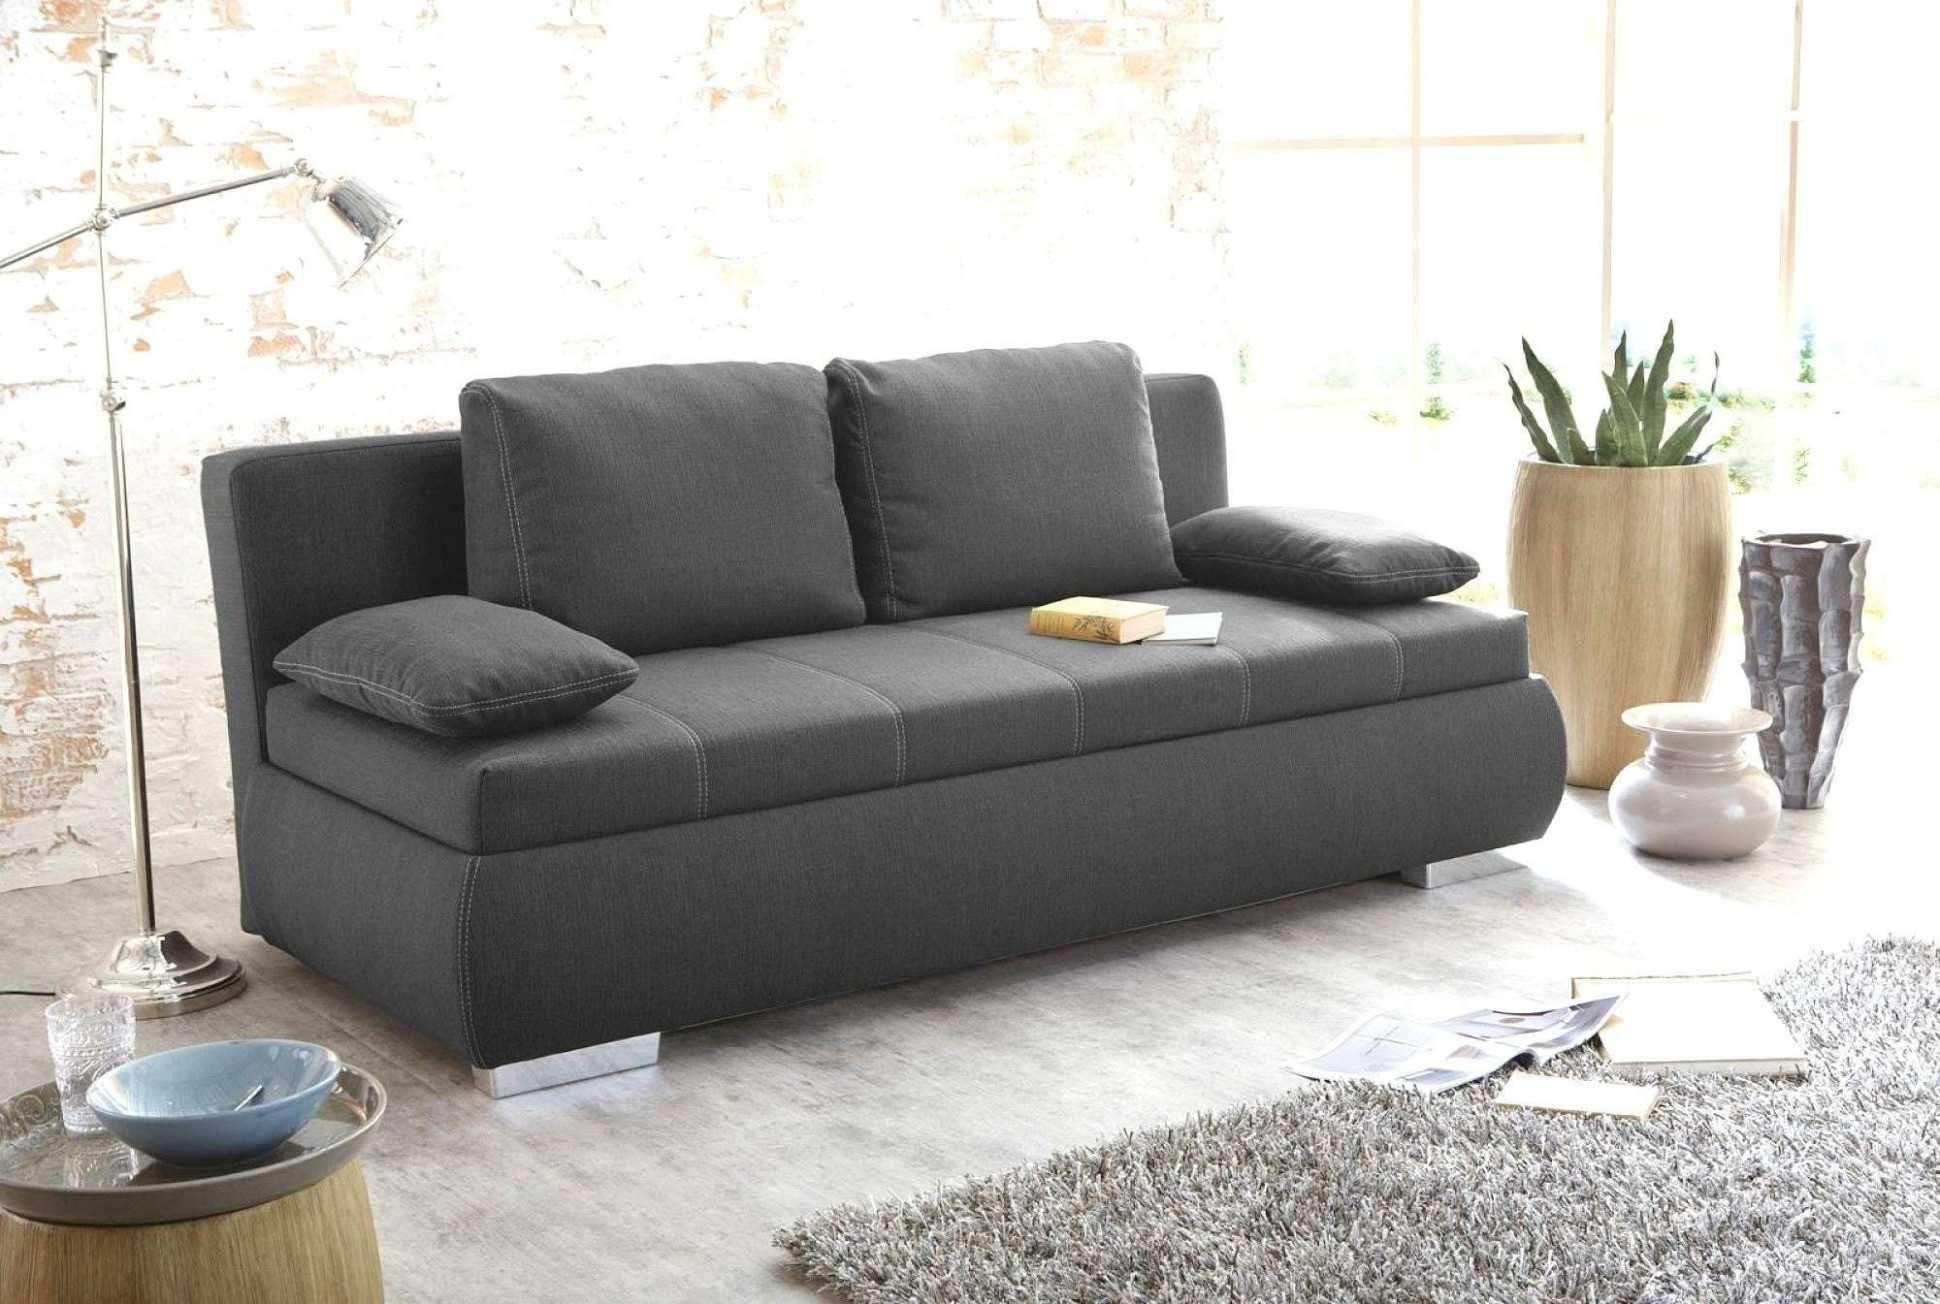 wohnzimmer grau grun luxus 40 luxus von sofa klein gunstig ideen of wohnzimmer grau grun